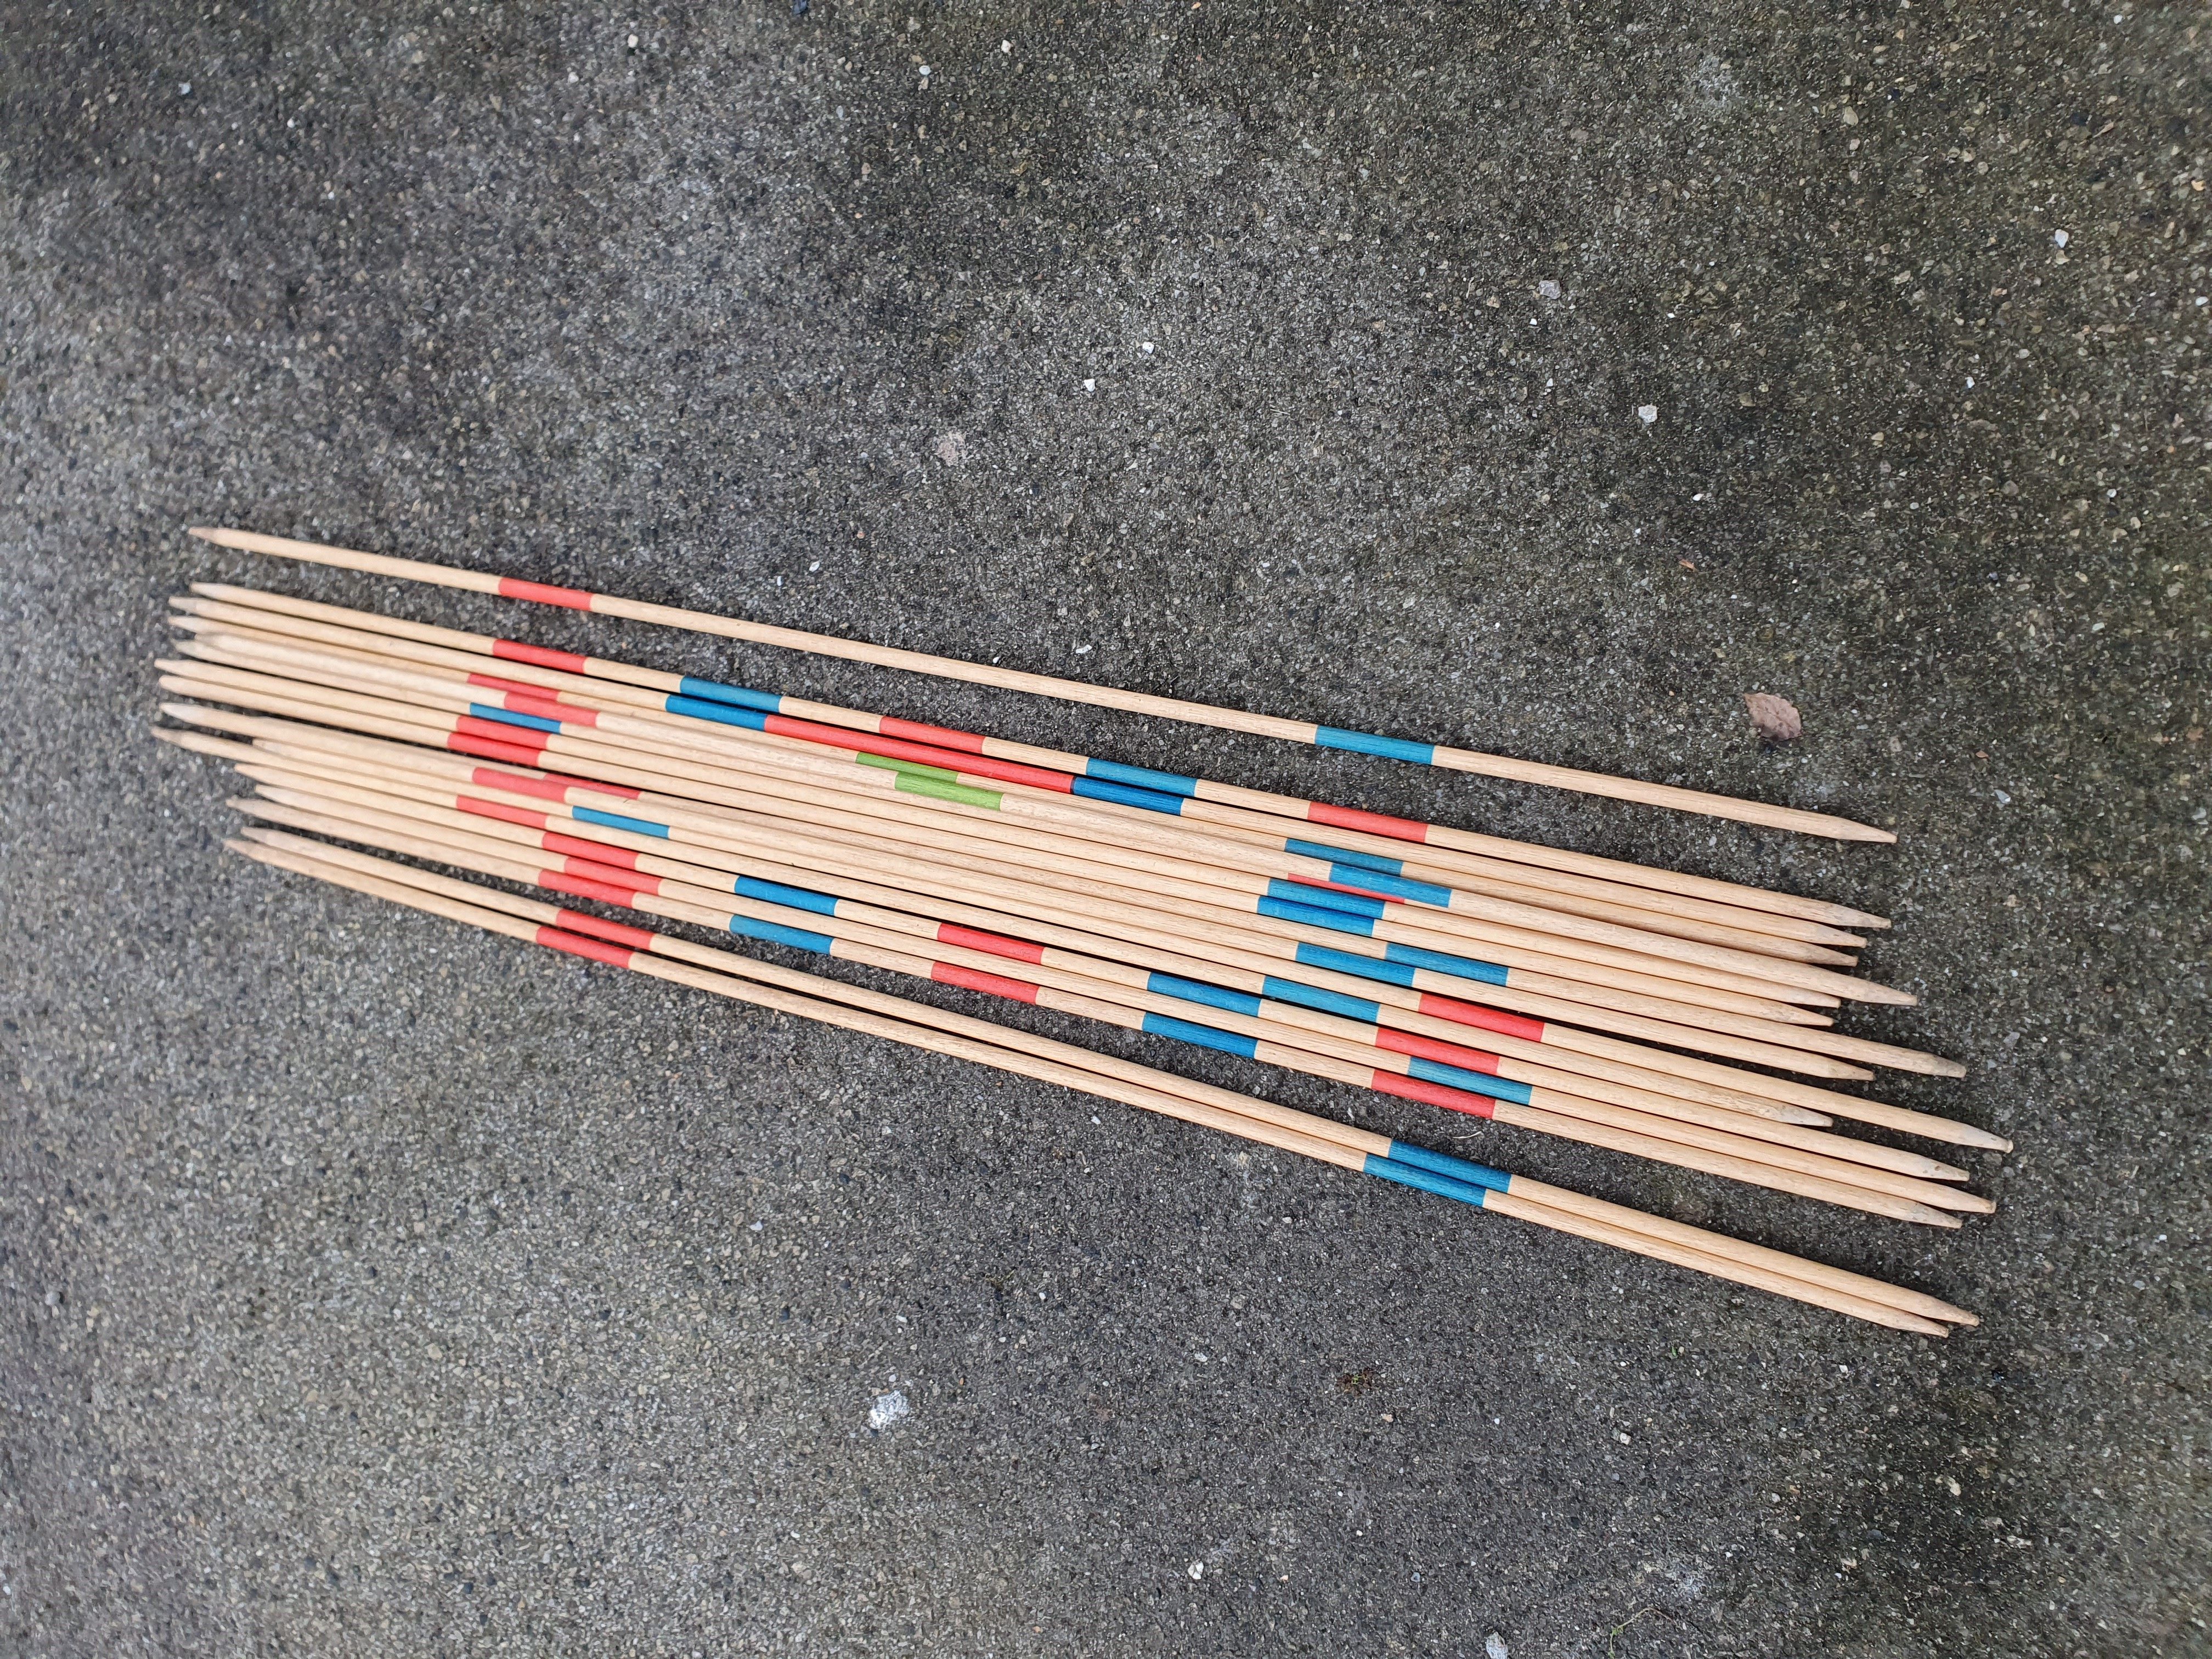 Das klassische Mikado im Großformat: das bekannte Tischspiel wird hier in einer Riesenfassung ausgetragen. 25 Holz-Mikadostäbe, ca. 95 cm lang, 10 mm stark. Alle Stäbe mit richtigen Markierungen (Mikado, Mandarin, Bonzen, Samurai, Kuli). 